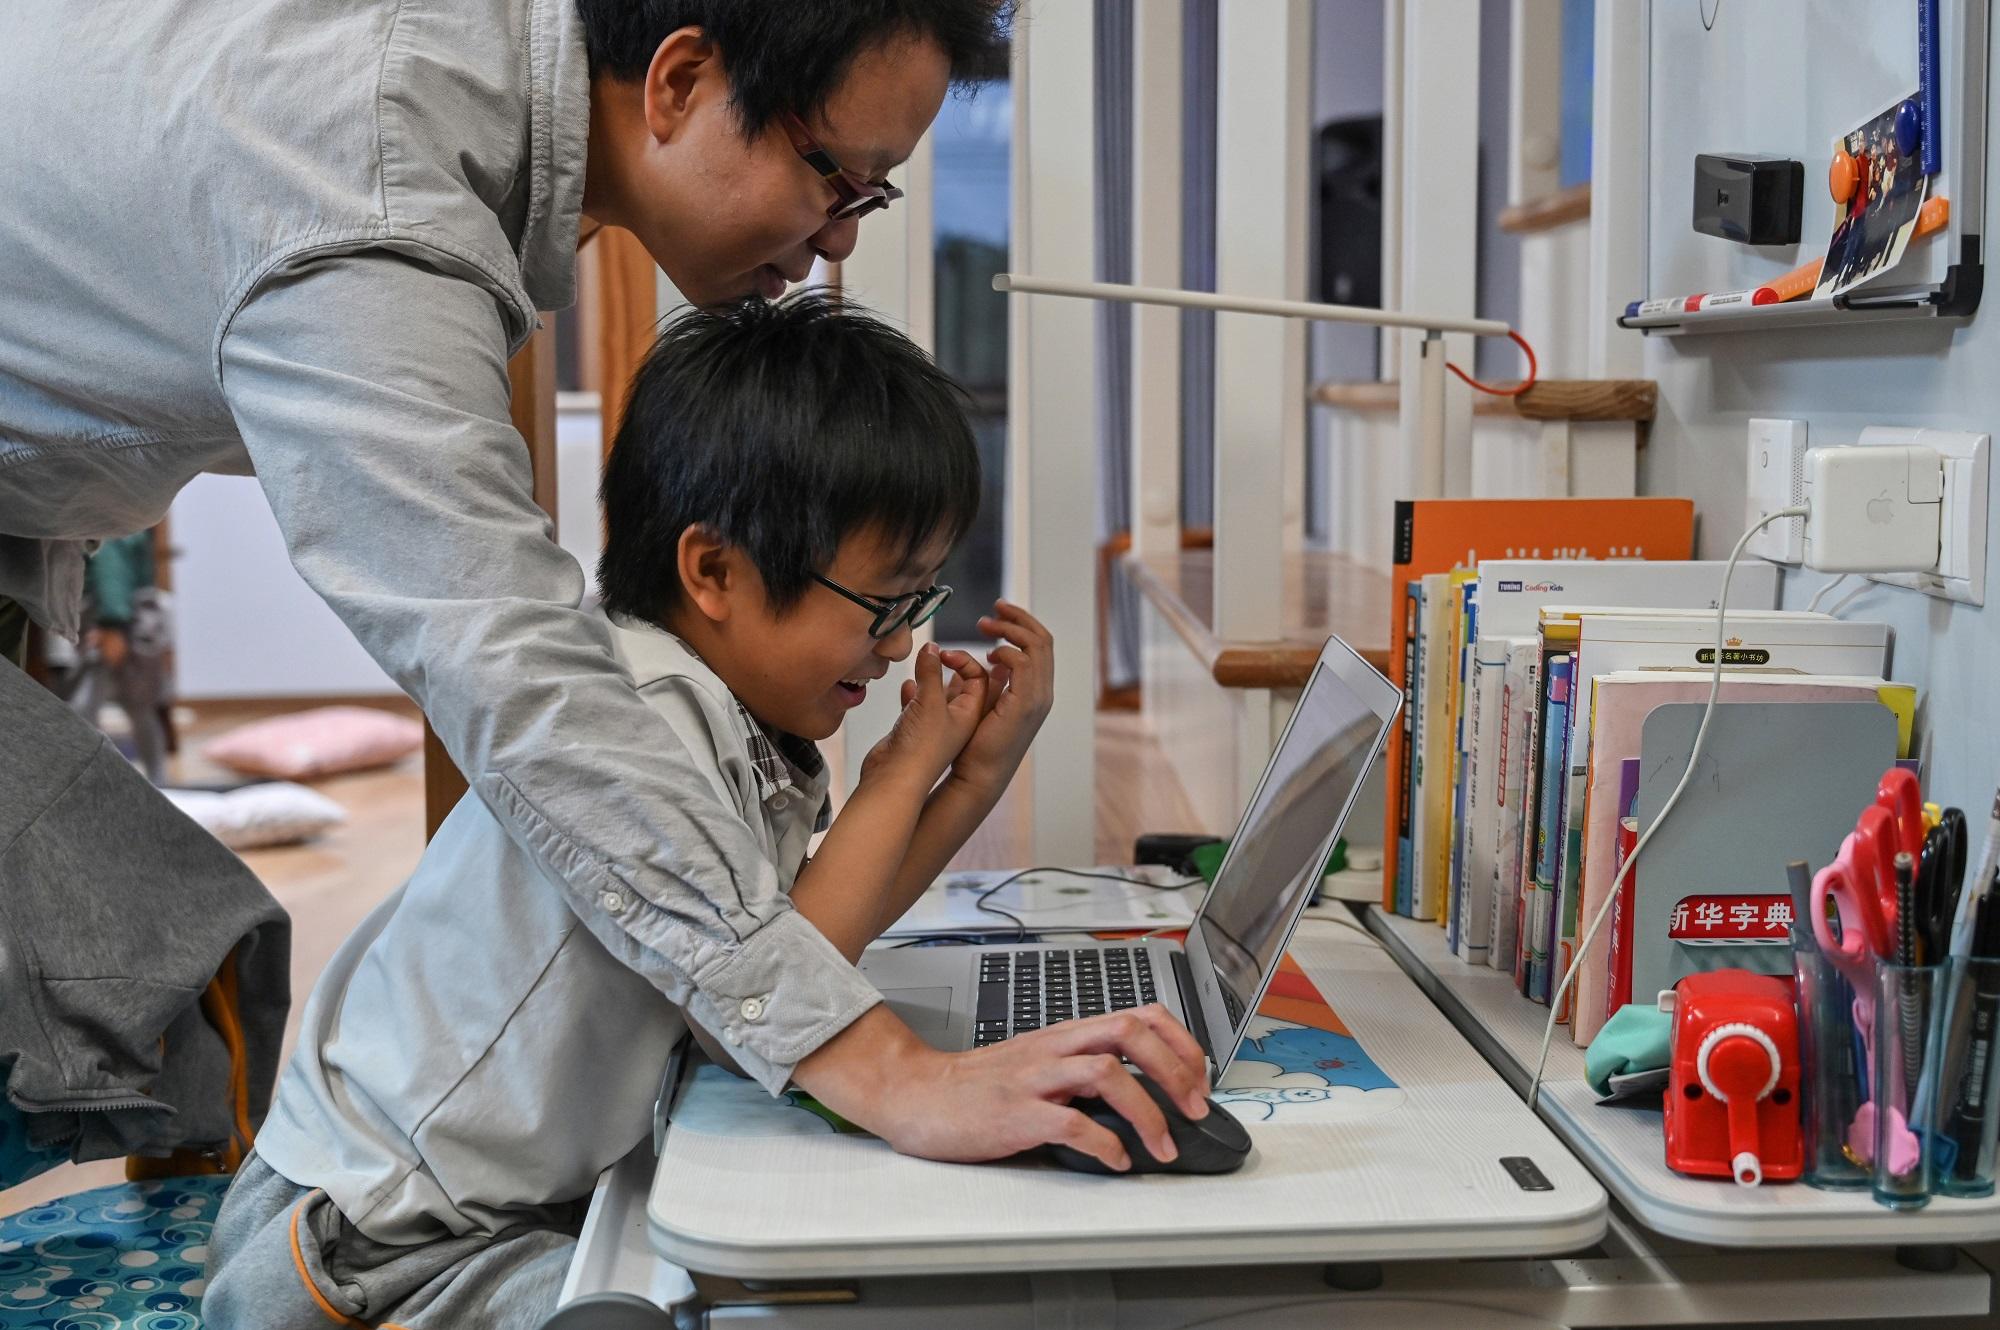 زوو زينغ يساعد ابنه الذي يحمل اسم فيتا على إنشاء لعبة بها ترميز على كمبيوتره في منزله في شنغهاي. 7 تشرين ثاني/ نوفمبر 2019. هيكتور ريتامال / أ ف ب